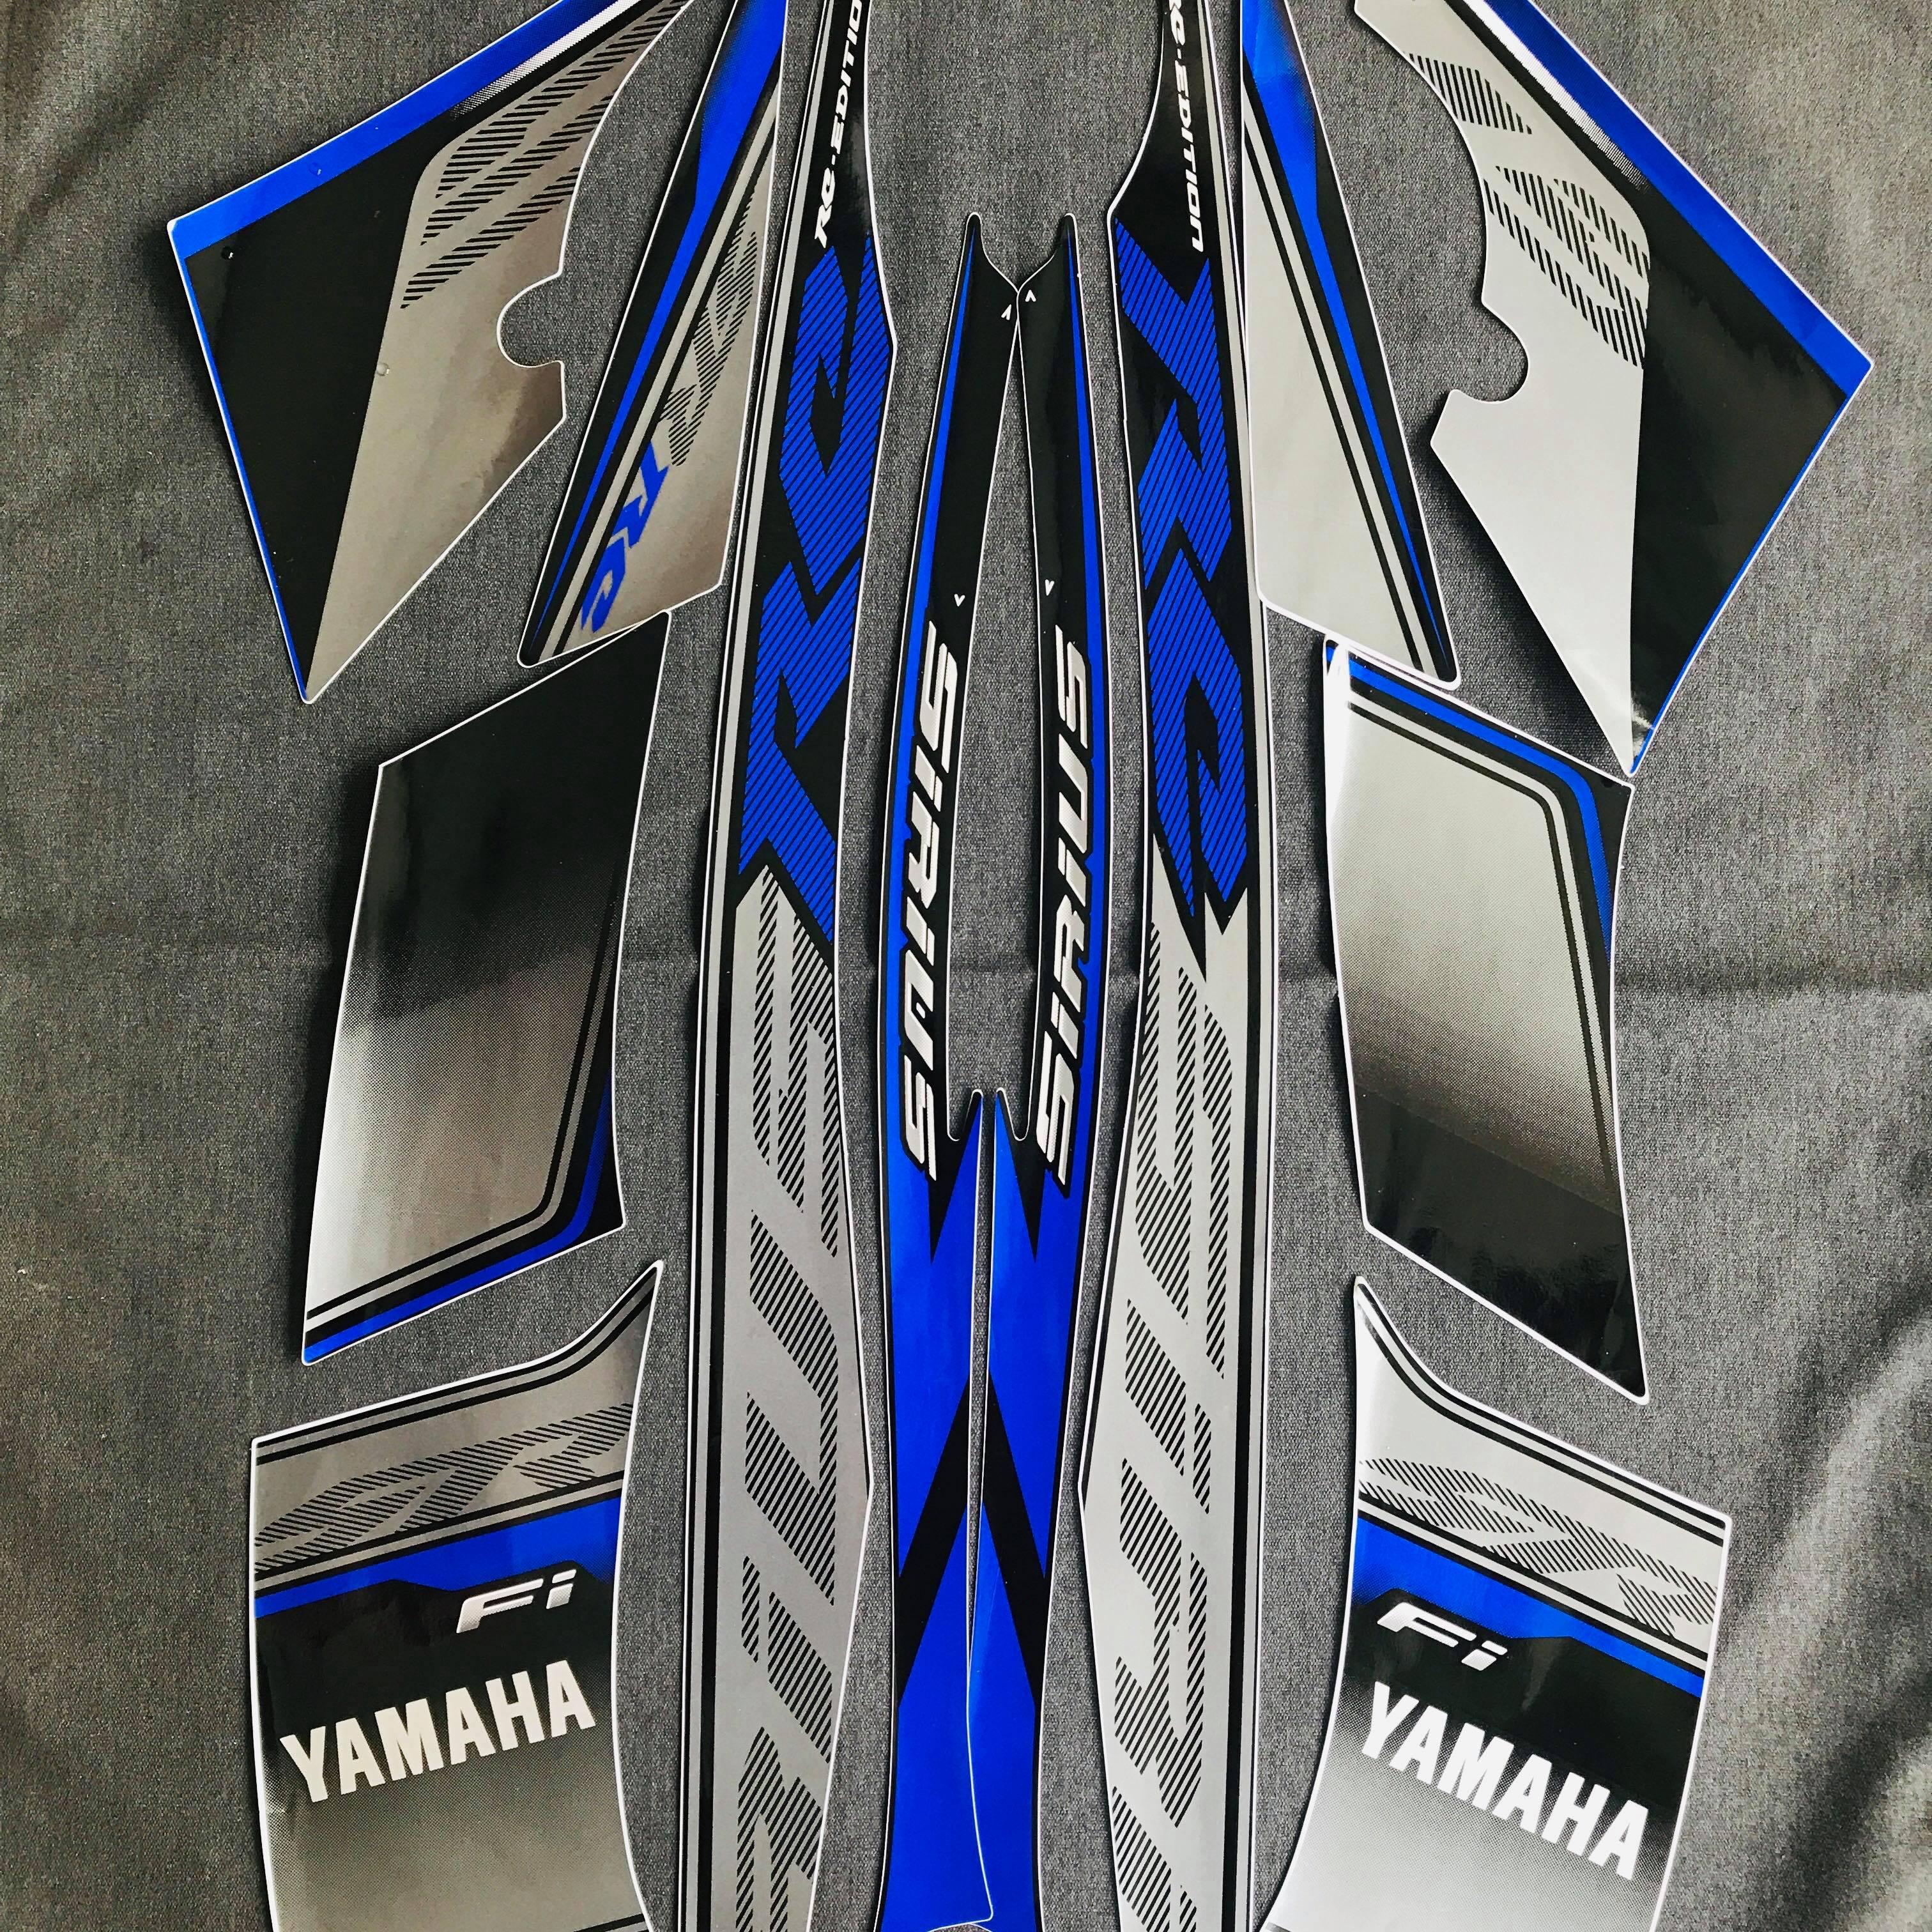 Xe Yamaha Sirius RC FI đời 2014 mâm đĩa  Xe  bán tại Mua bán xe máy cũ   xe cũ giá rẻ xe máy cũ giá rẻ xe số giá